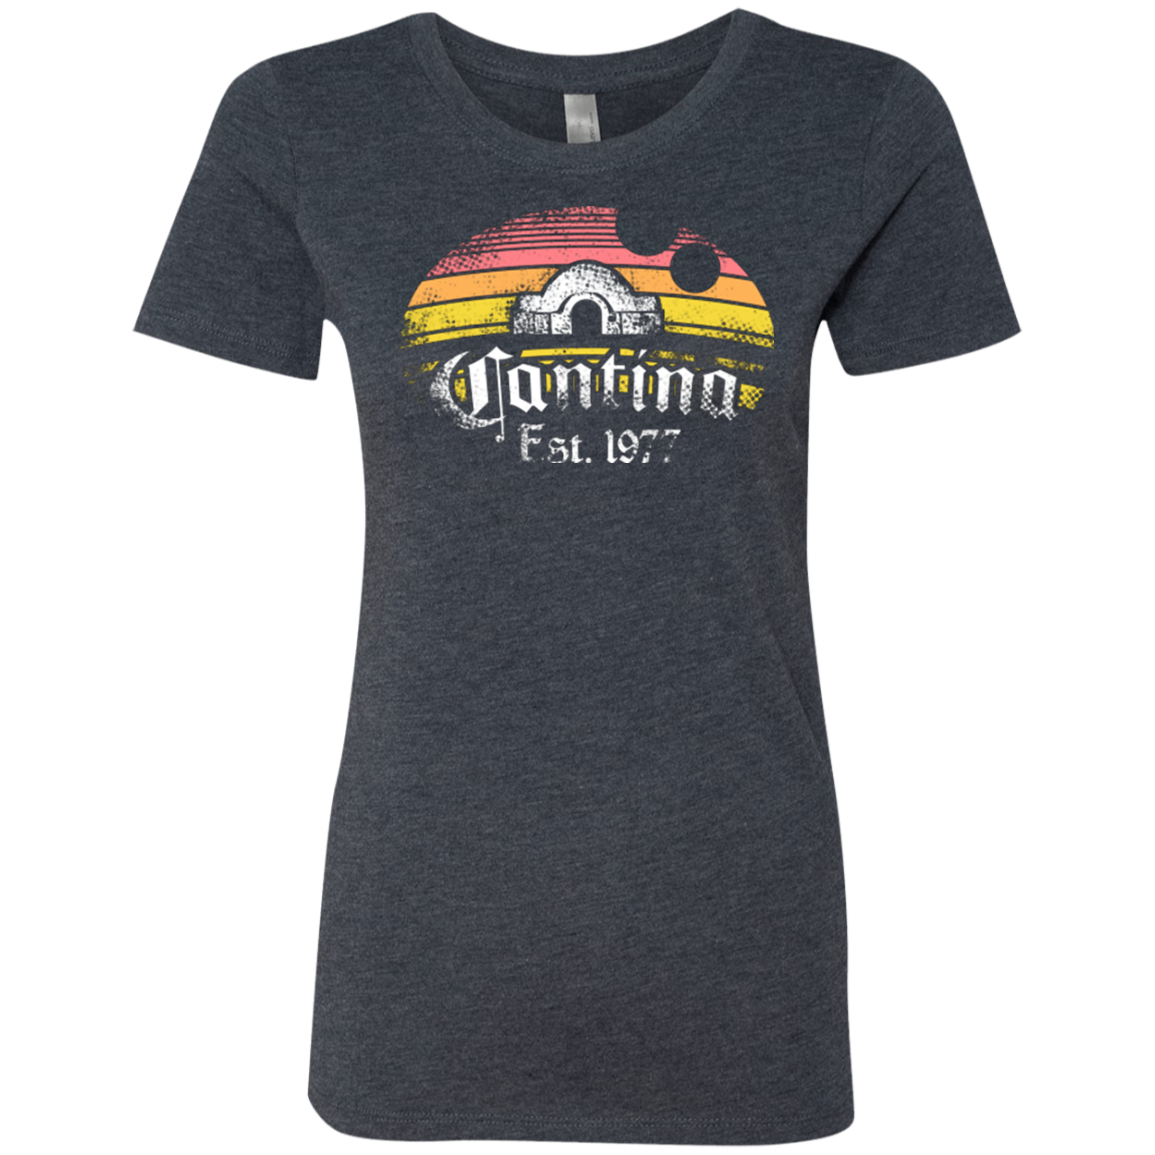 Cantina Women's Triblend T-Shirt